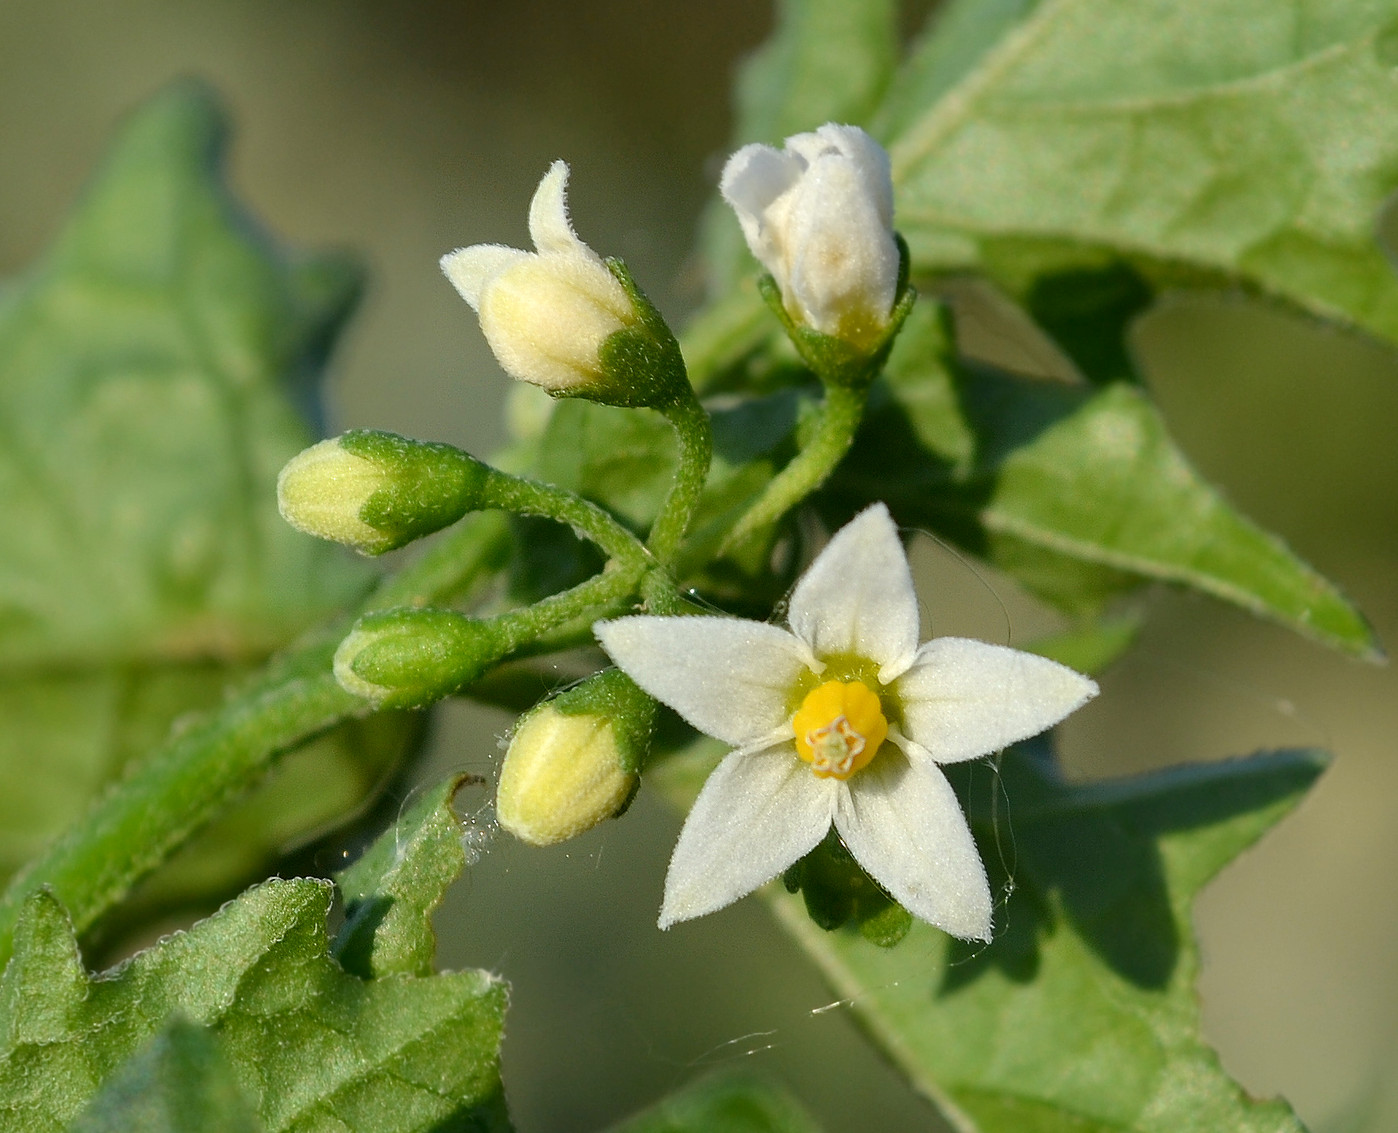 Image of genus Solanum specimen.